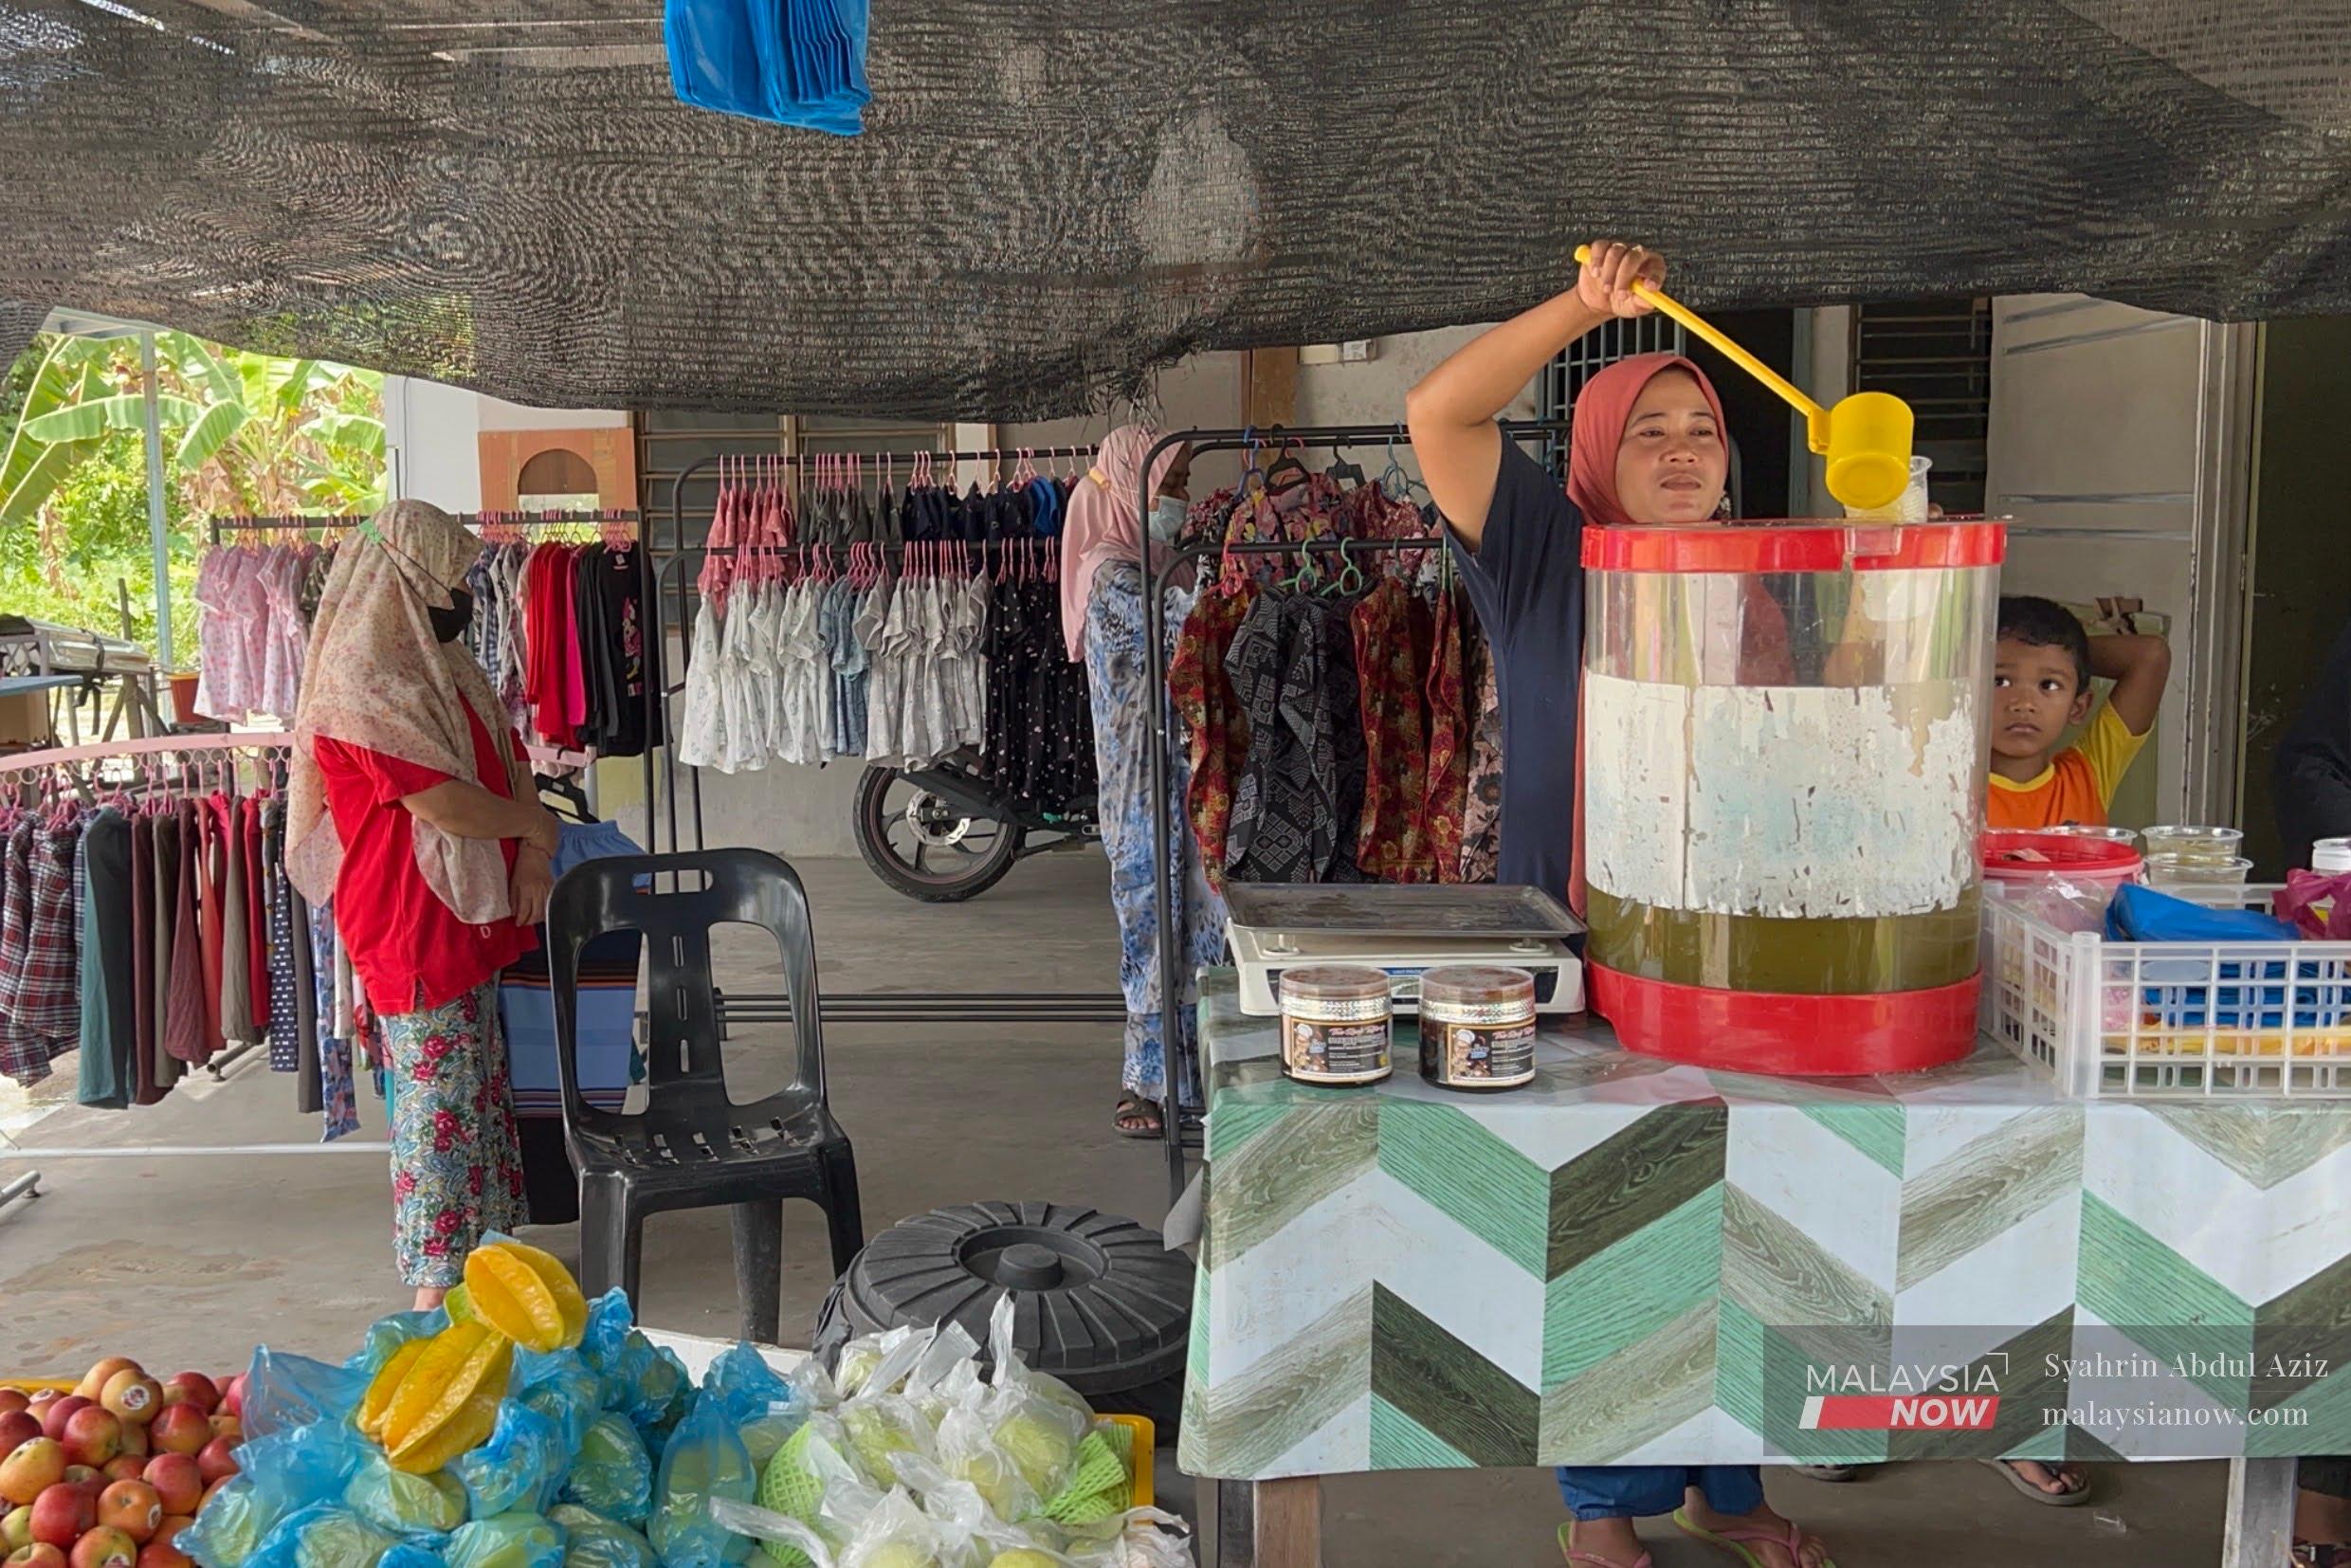 Penjual air tebu sedang membungkus jualan untuk pelanggan. Aktiviti perniagaan mulai aktif selepas kelonggaran diberikan kepada peniaga kecil untuk jalankan aktiviti perniagaan dalam tempoh hingga tengah malam.